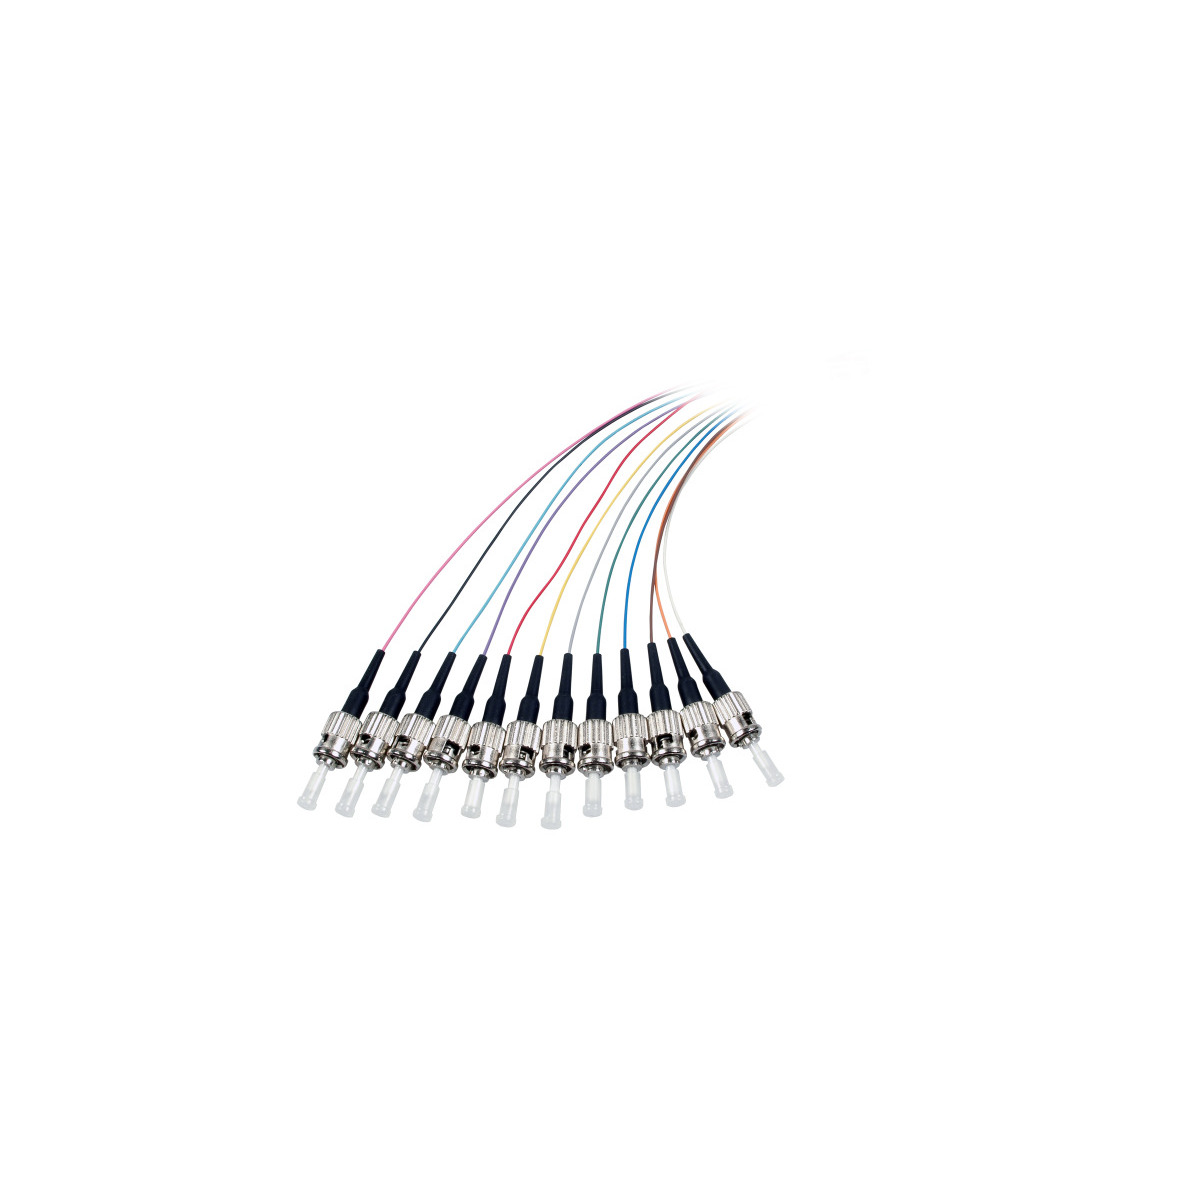 Pigtails Kabel 2 / COMMUNIK m Faserpigtail, ST Glasfaserkabel,